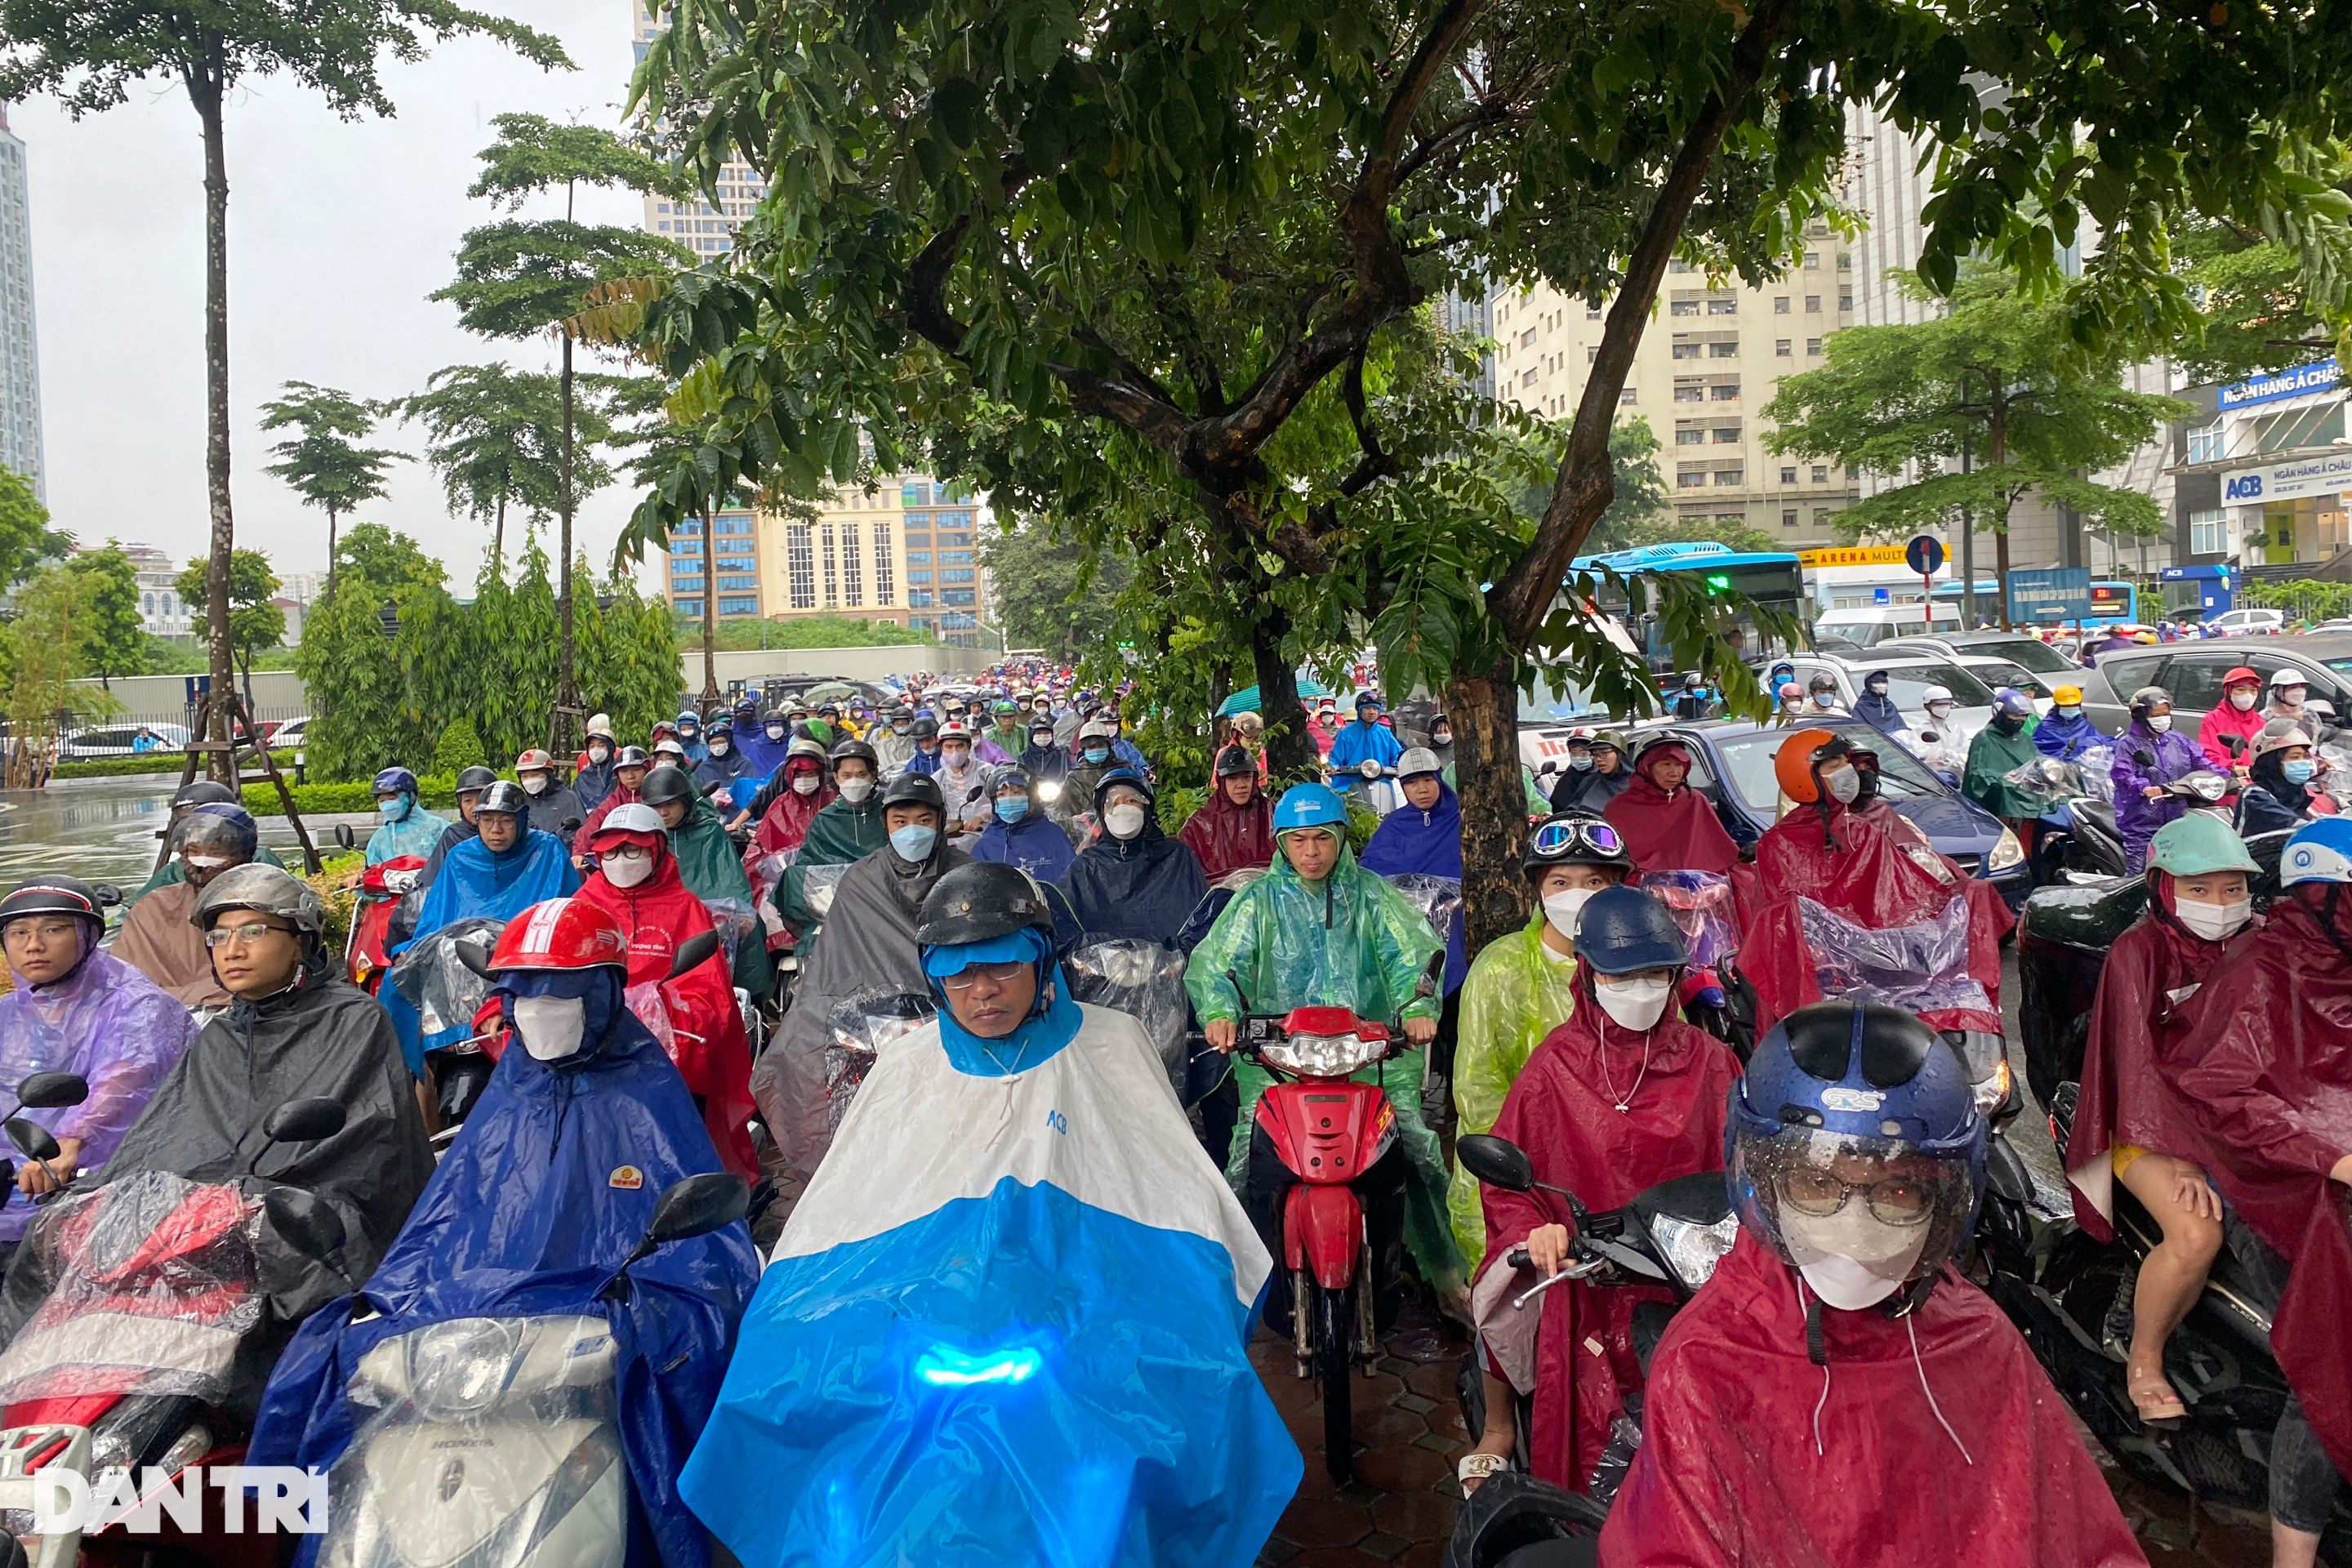 Hình ảnh giao thông ùn tắc kinh hoàng, kéo dài 2km do mưa ngập ở Hà Nội - 10